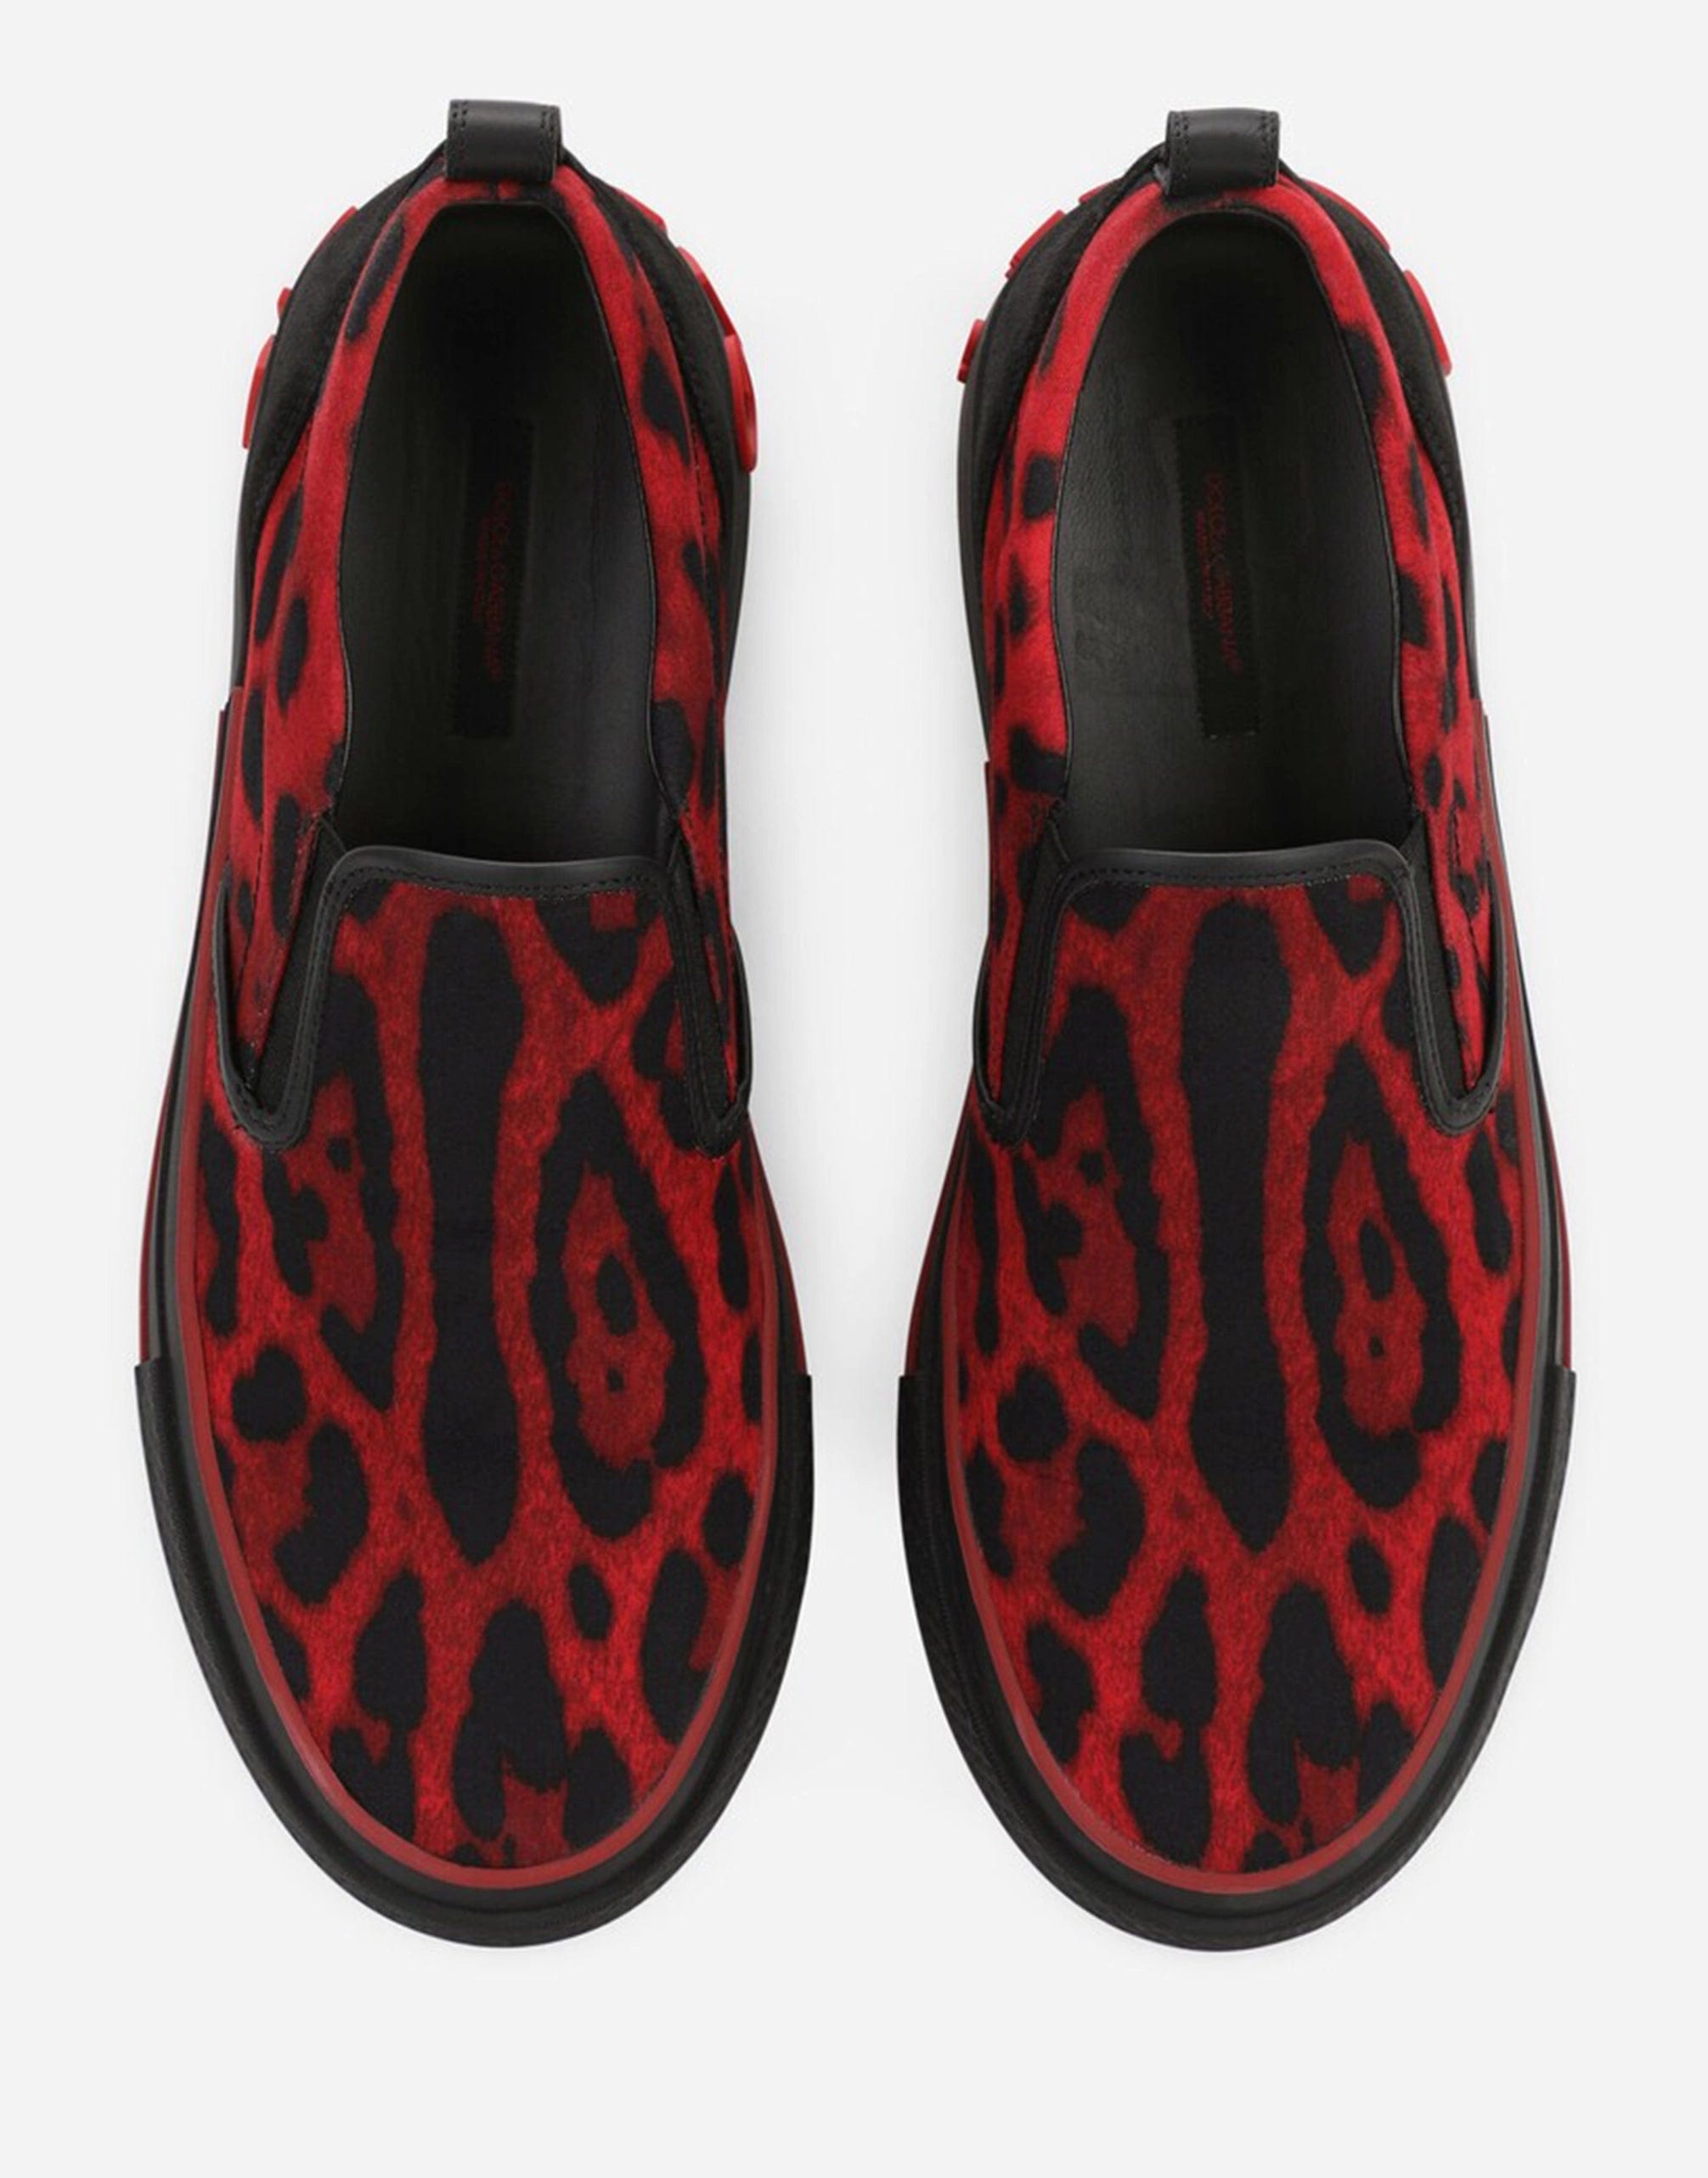 Custom 2. cero zapatillas de zapatillas en la huella de leopardo